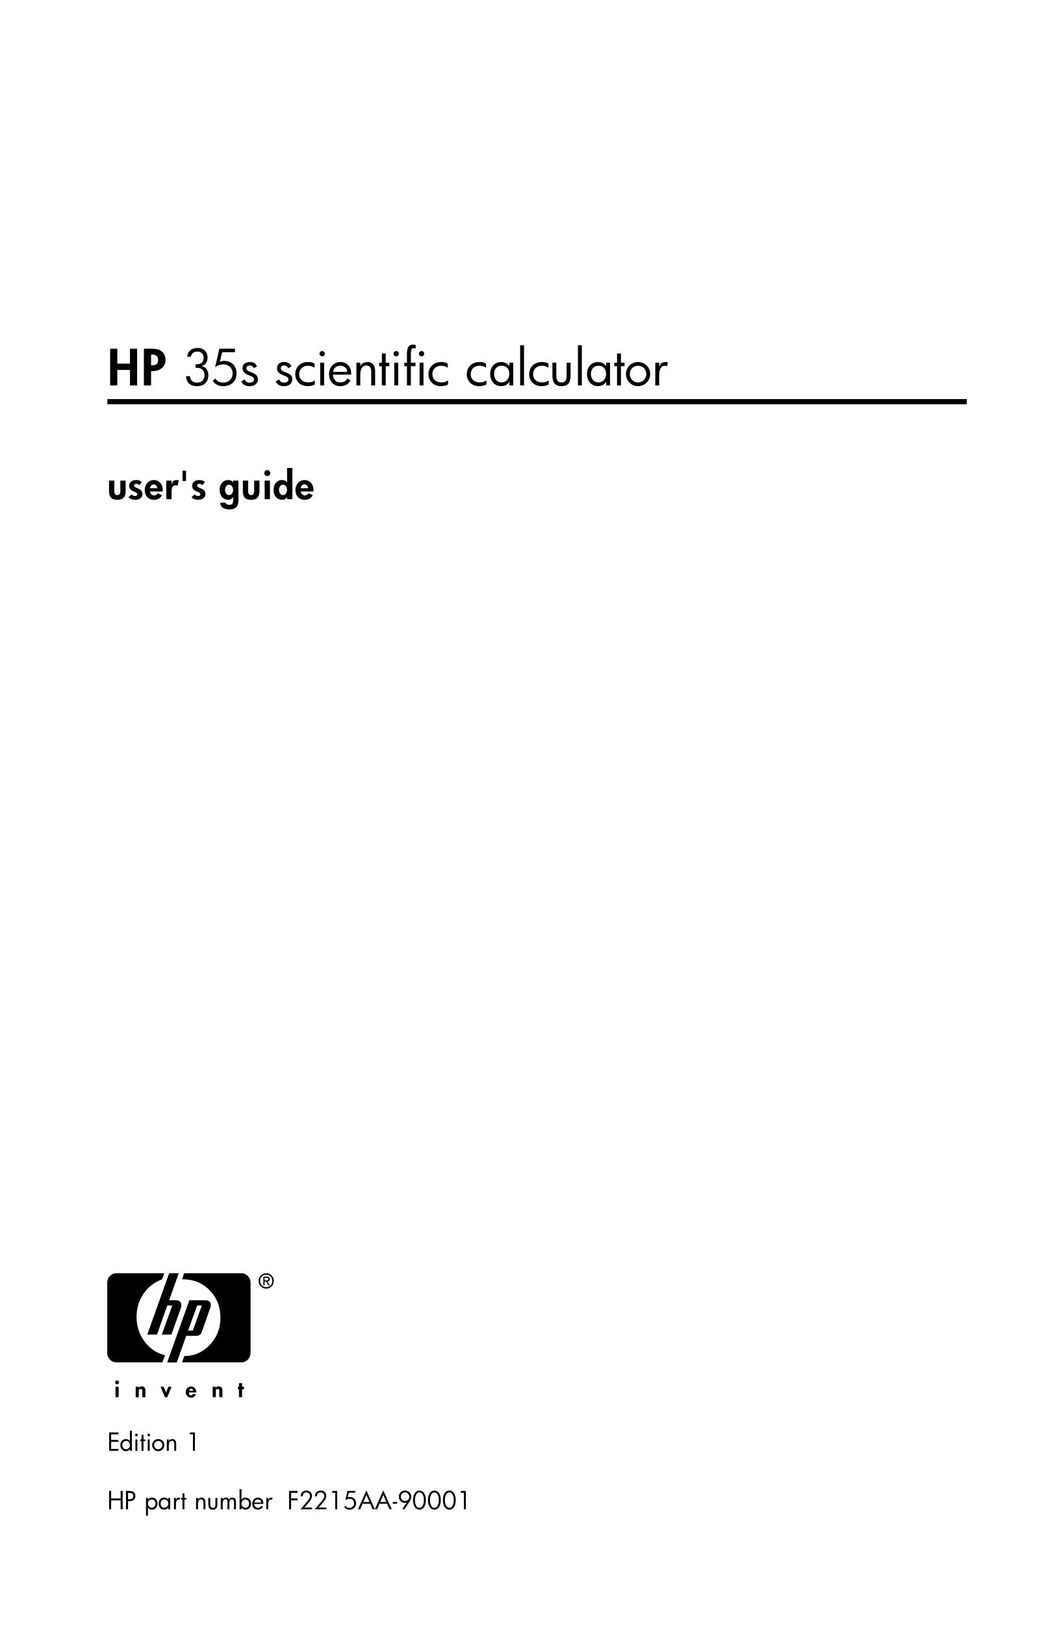 HP (Hewlett-Packard) 35s Calculator User Manual